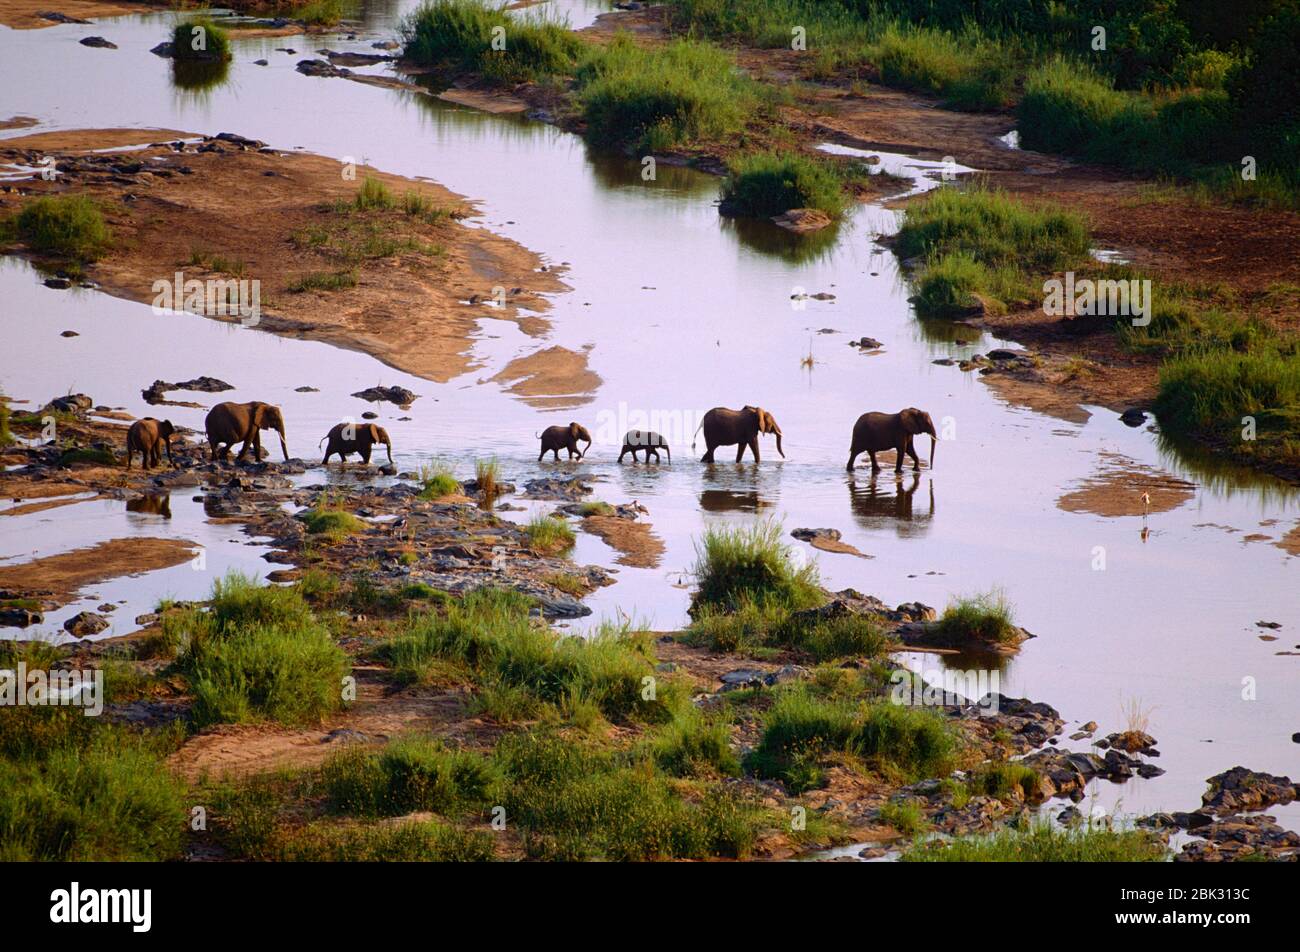 African Elephant, Loxodonta africana, Elephant, Elephantidae, mammal, animal, Olifants river, Olifants Lodge, Krüger National Park, South Africa Stock Photo